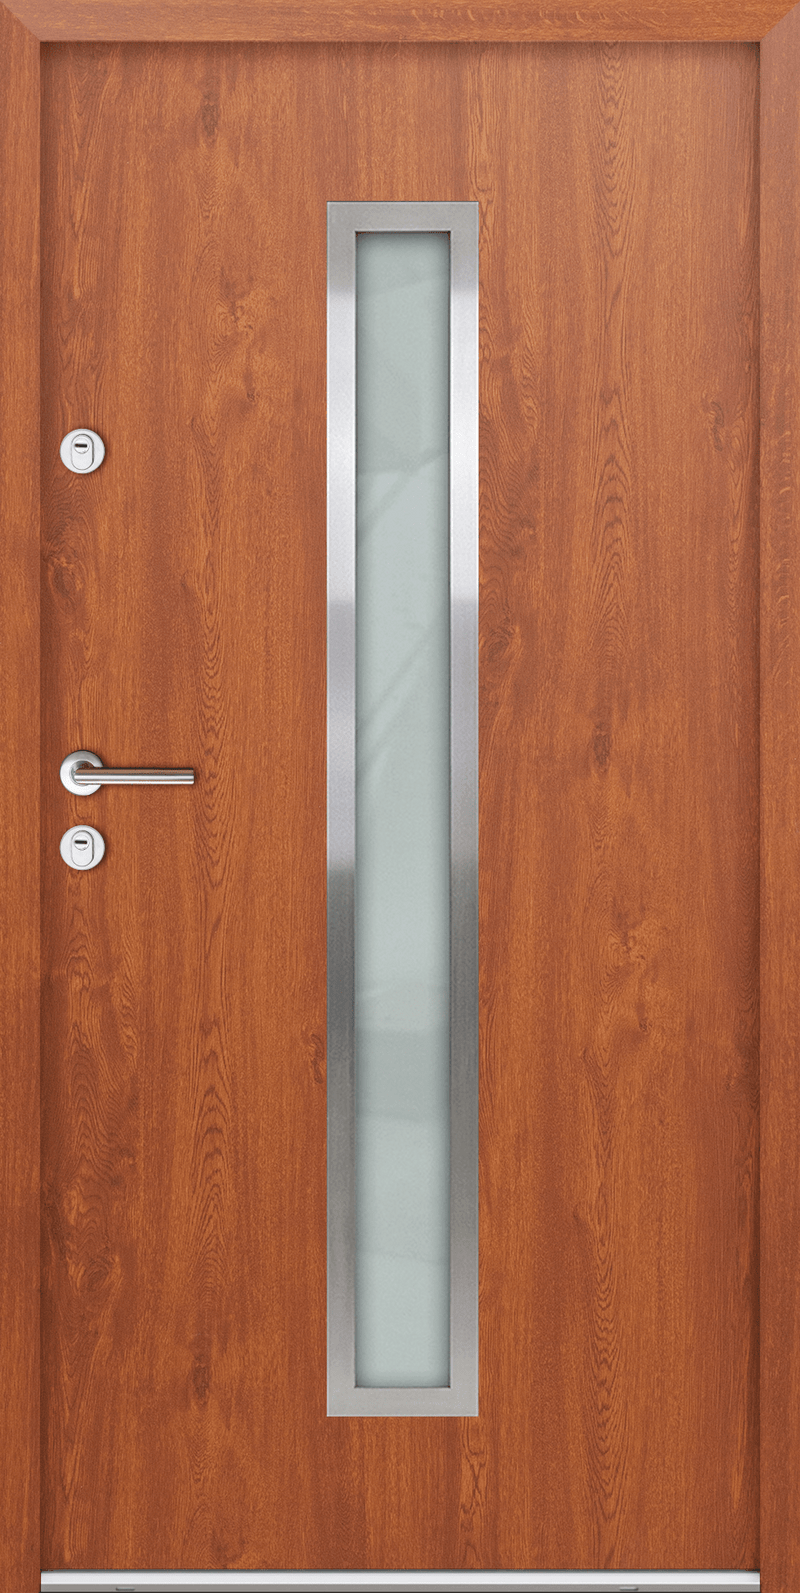 Turenwerke ATU 68 Design 600 Steel Door - Golden Oak